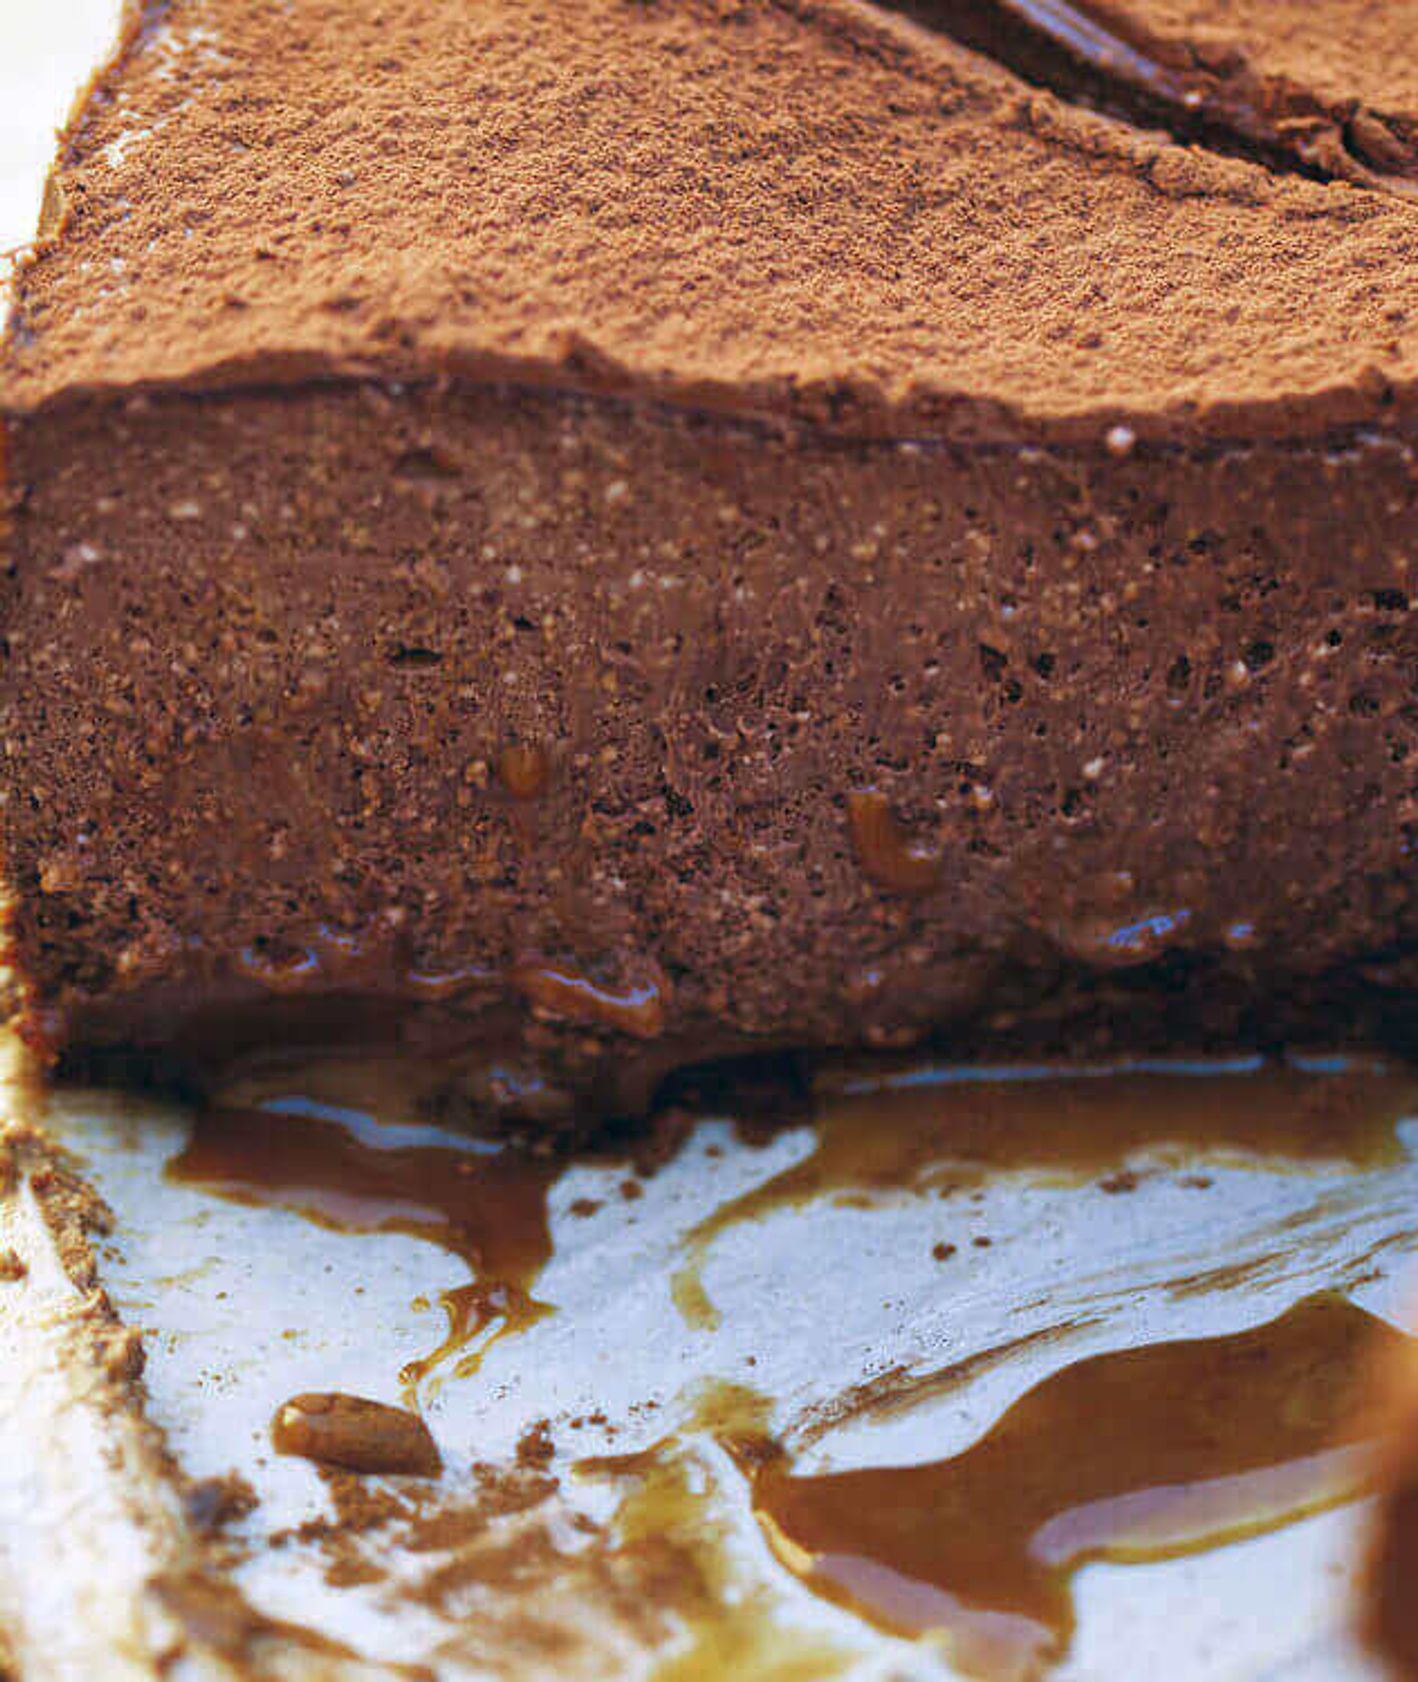 rozpustny sernik czekoladowy, sernik czekoladowy, ciasto czekoladowe, klasyczny sernik, sernik nowojorski, sernik z czekoladą, ciasto dla dzieci, prosty deser, deser czekoladowy